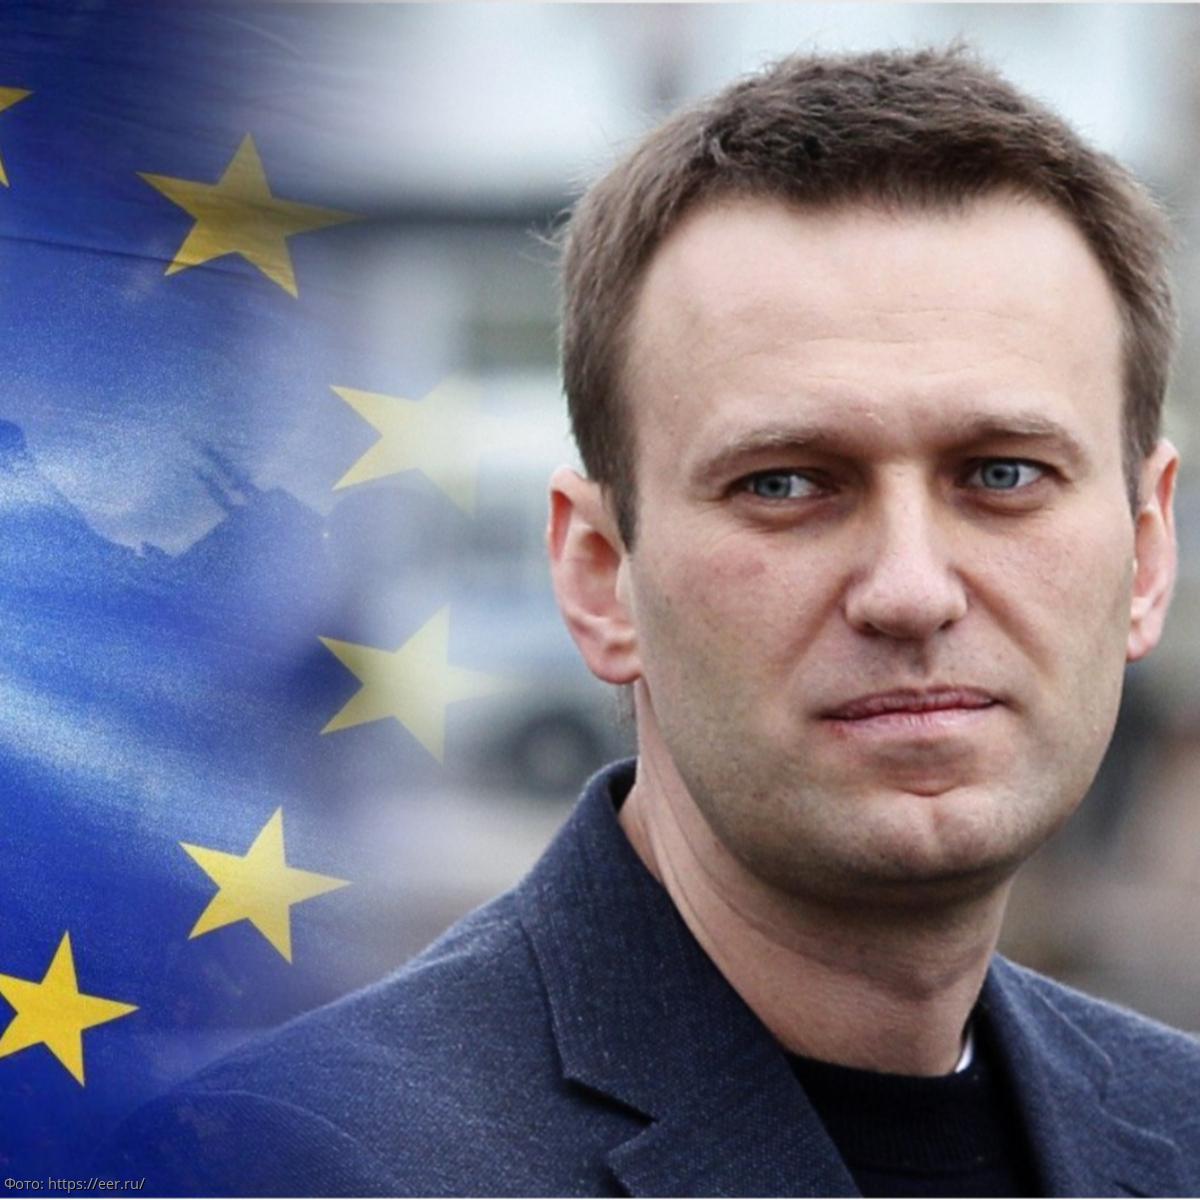 Министры иностранных дел ЕС проконсультируются по поводу отношения России к Навальному